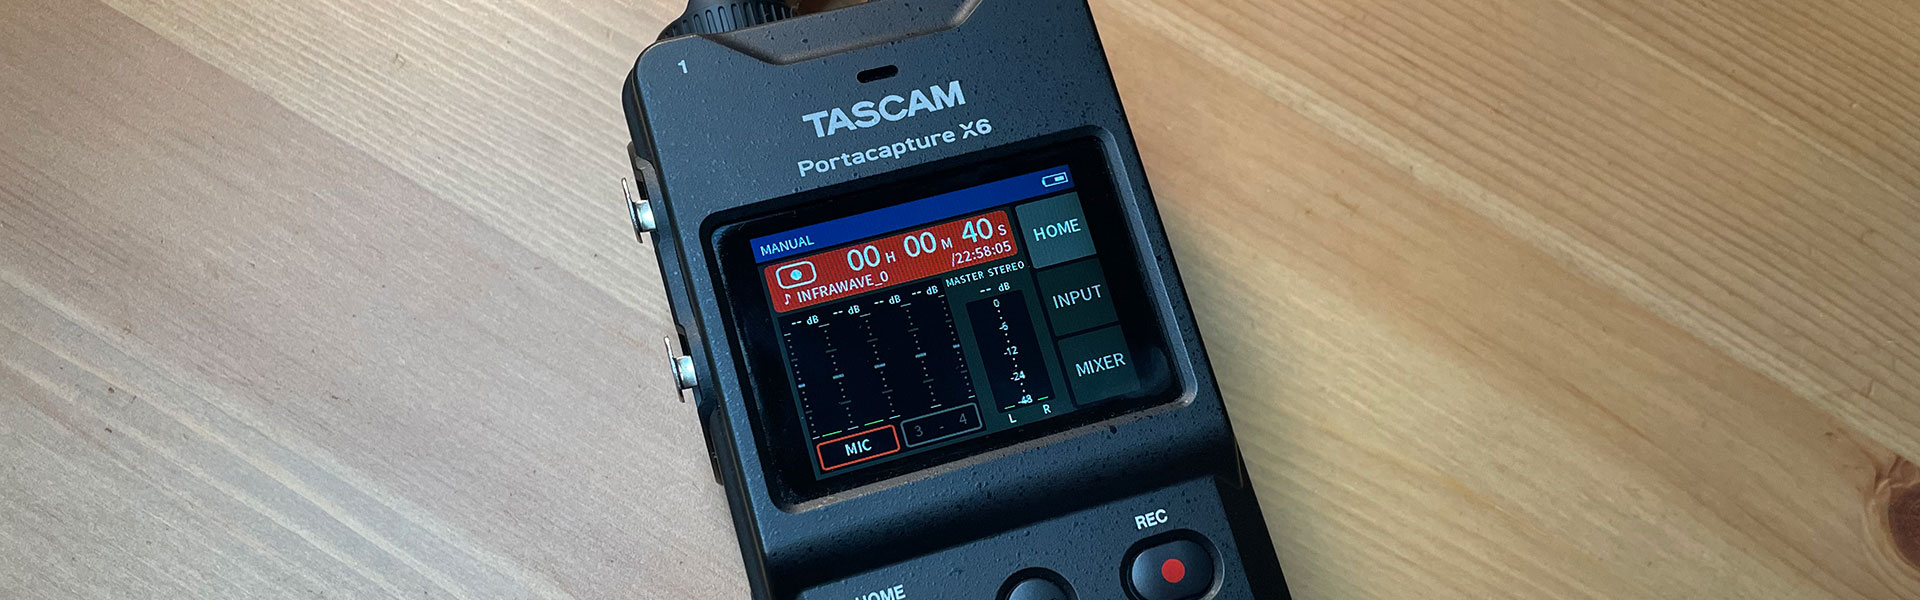 Test: Tascam X6 - Rewolucyjny rejestrator audio dla profesjonalistów i entuzjastów